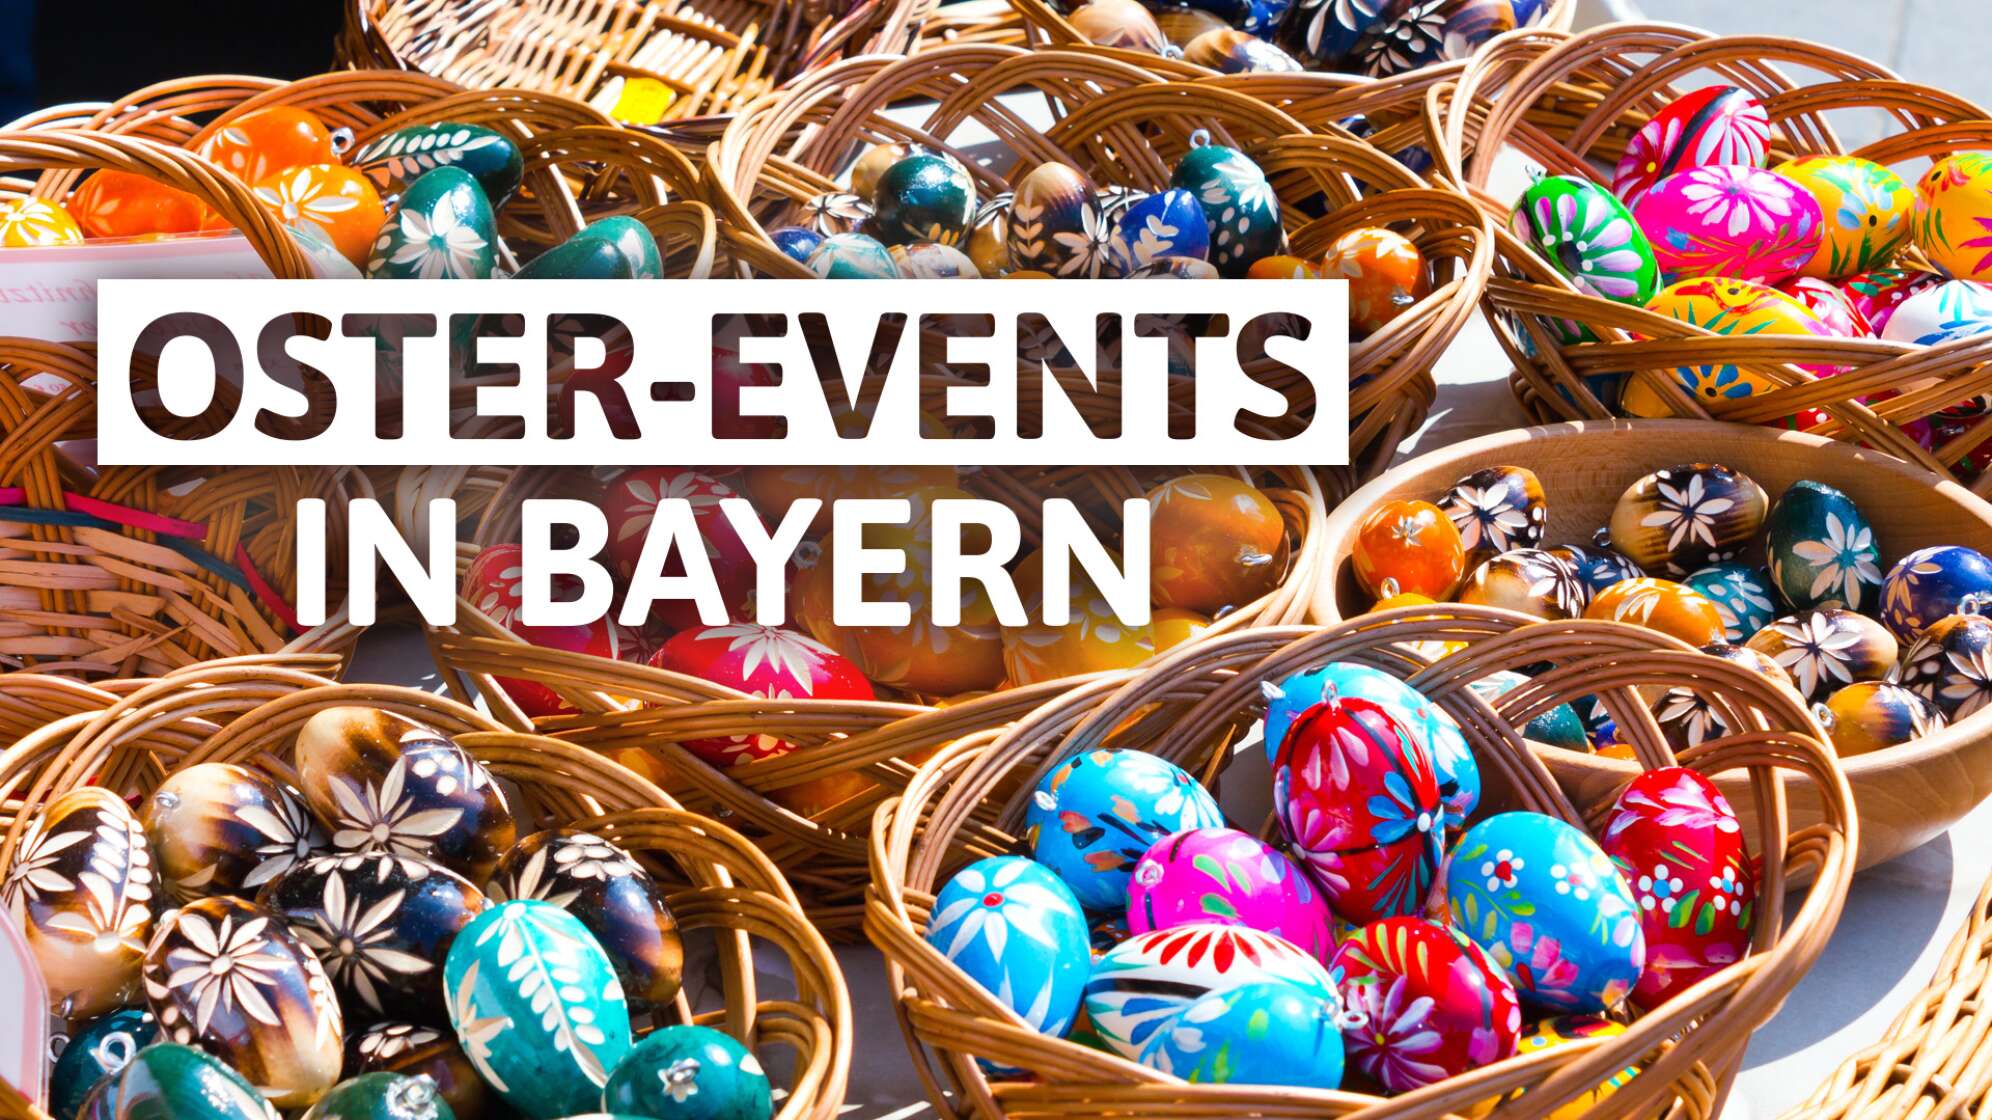 Ostermärkte und Events in Bayern